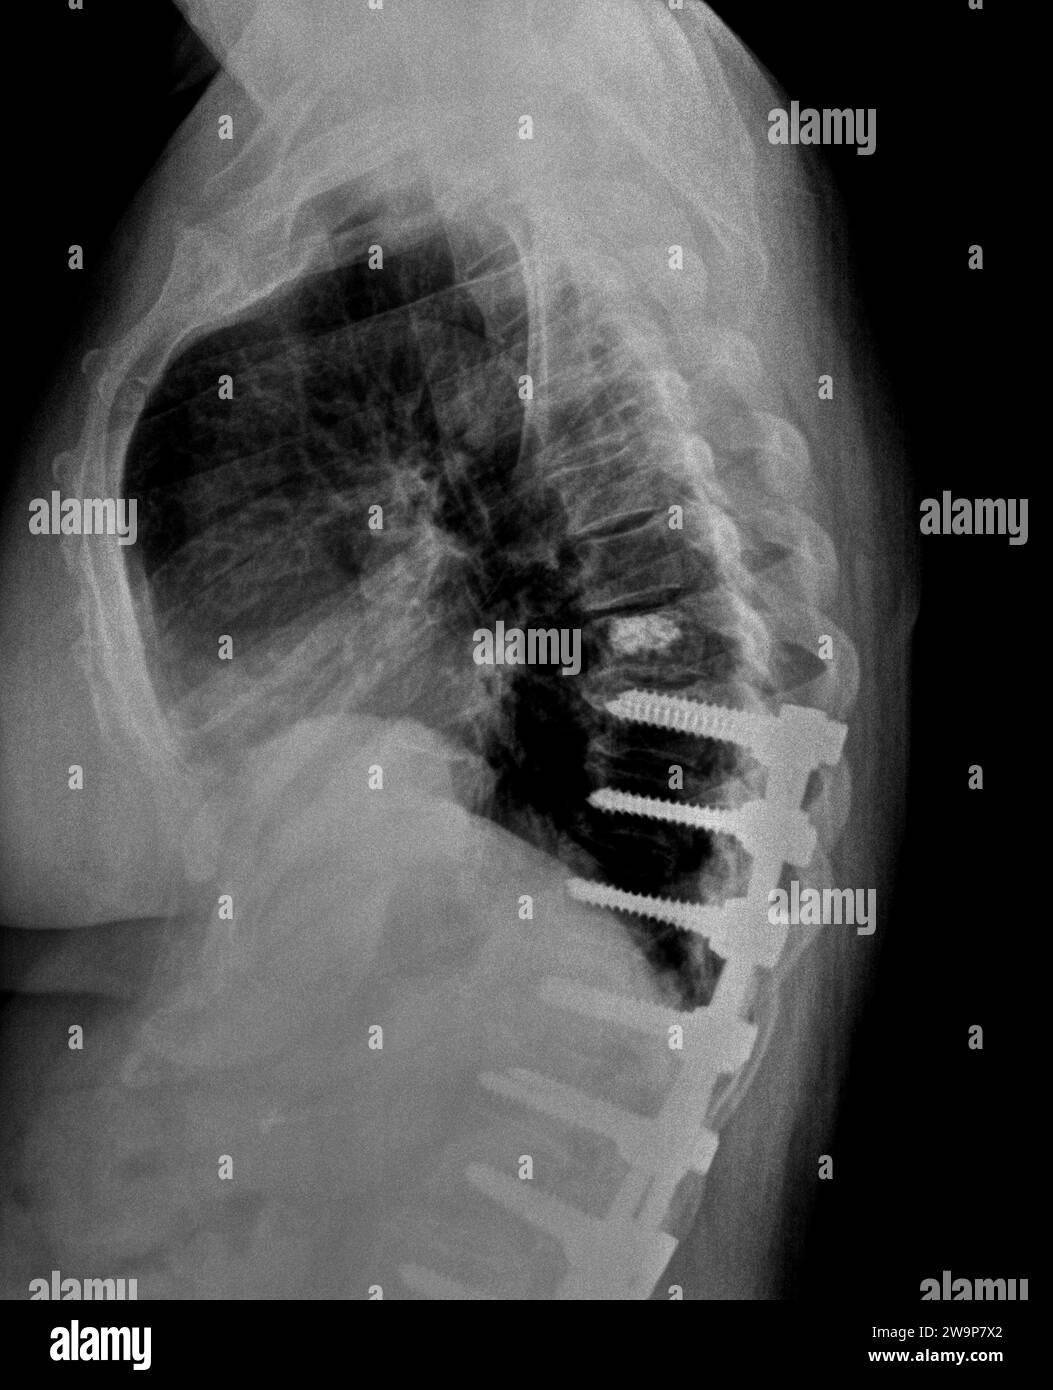 Radiographie ou radiographie filmique d'une vertèbre thoracique médio-dorsale. Vue latérale montrant le support chirurgical pour aider à stabiliser le milieu du dos du patient Banque D'Images